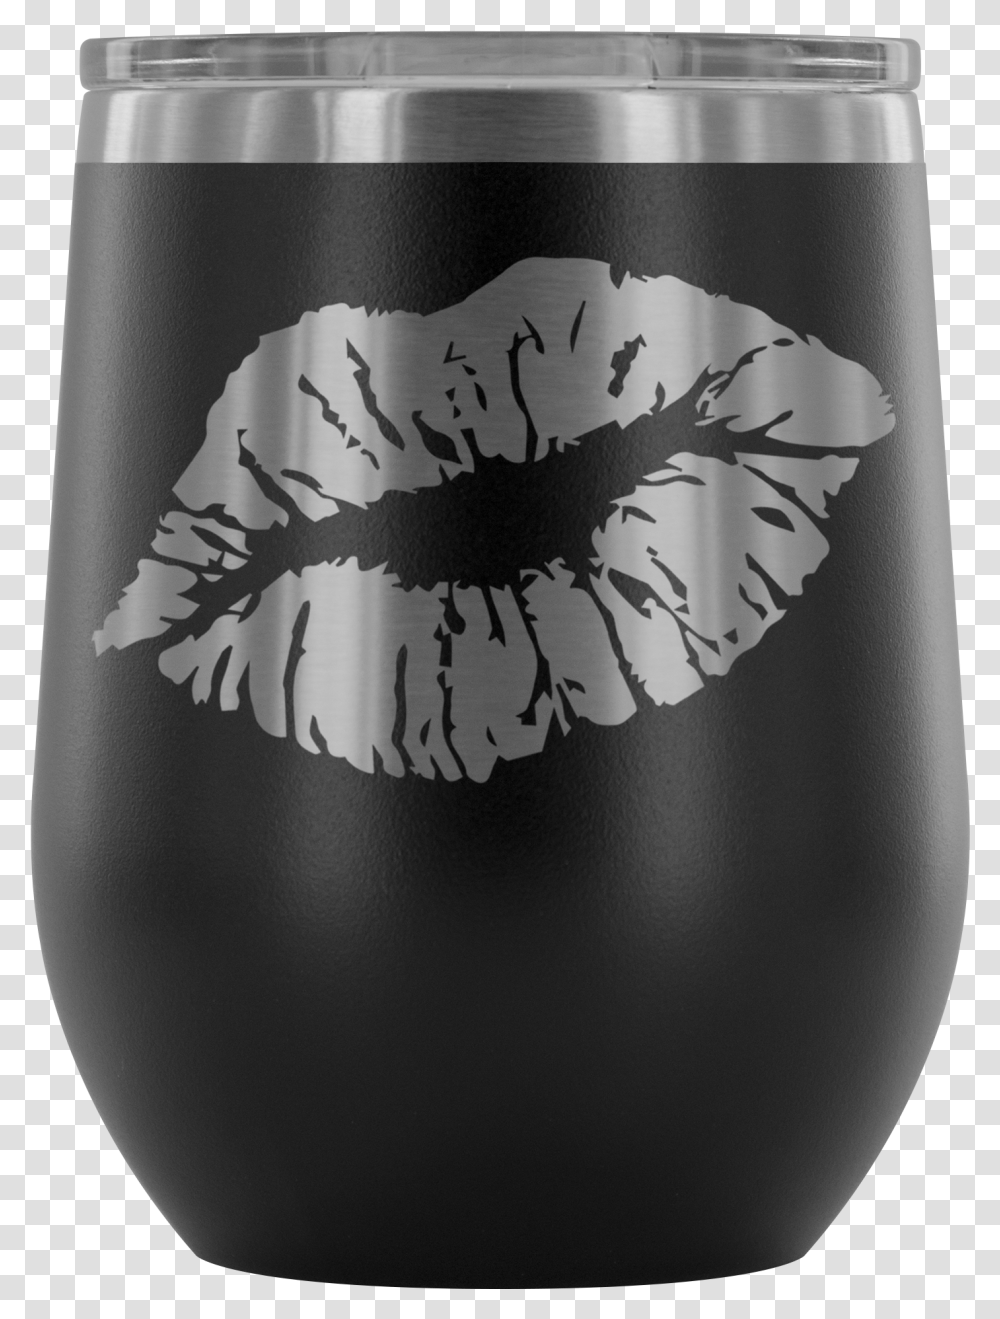 Lipstick Kiss Print Slanted Lips, Alcohol, Beverage, Beer, Bottle Transparent Png